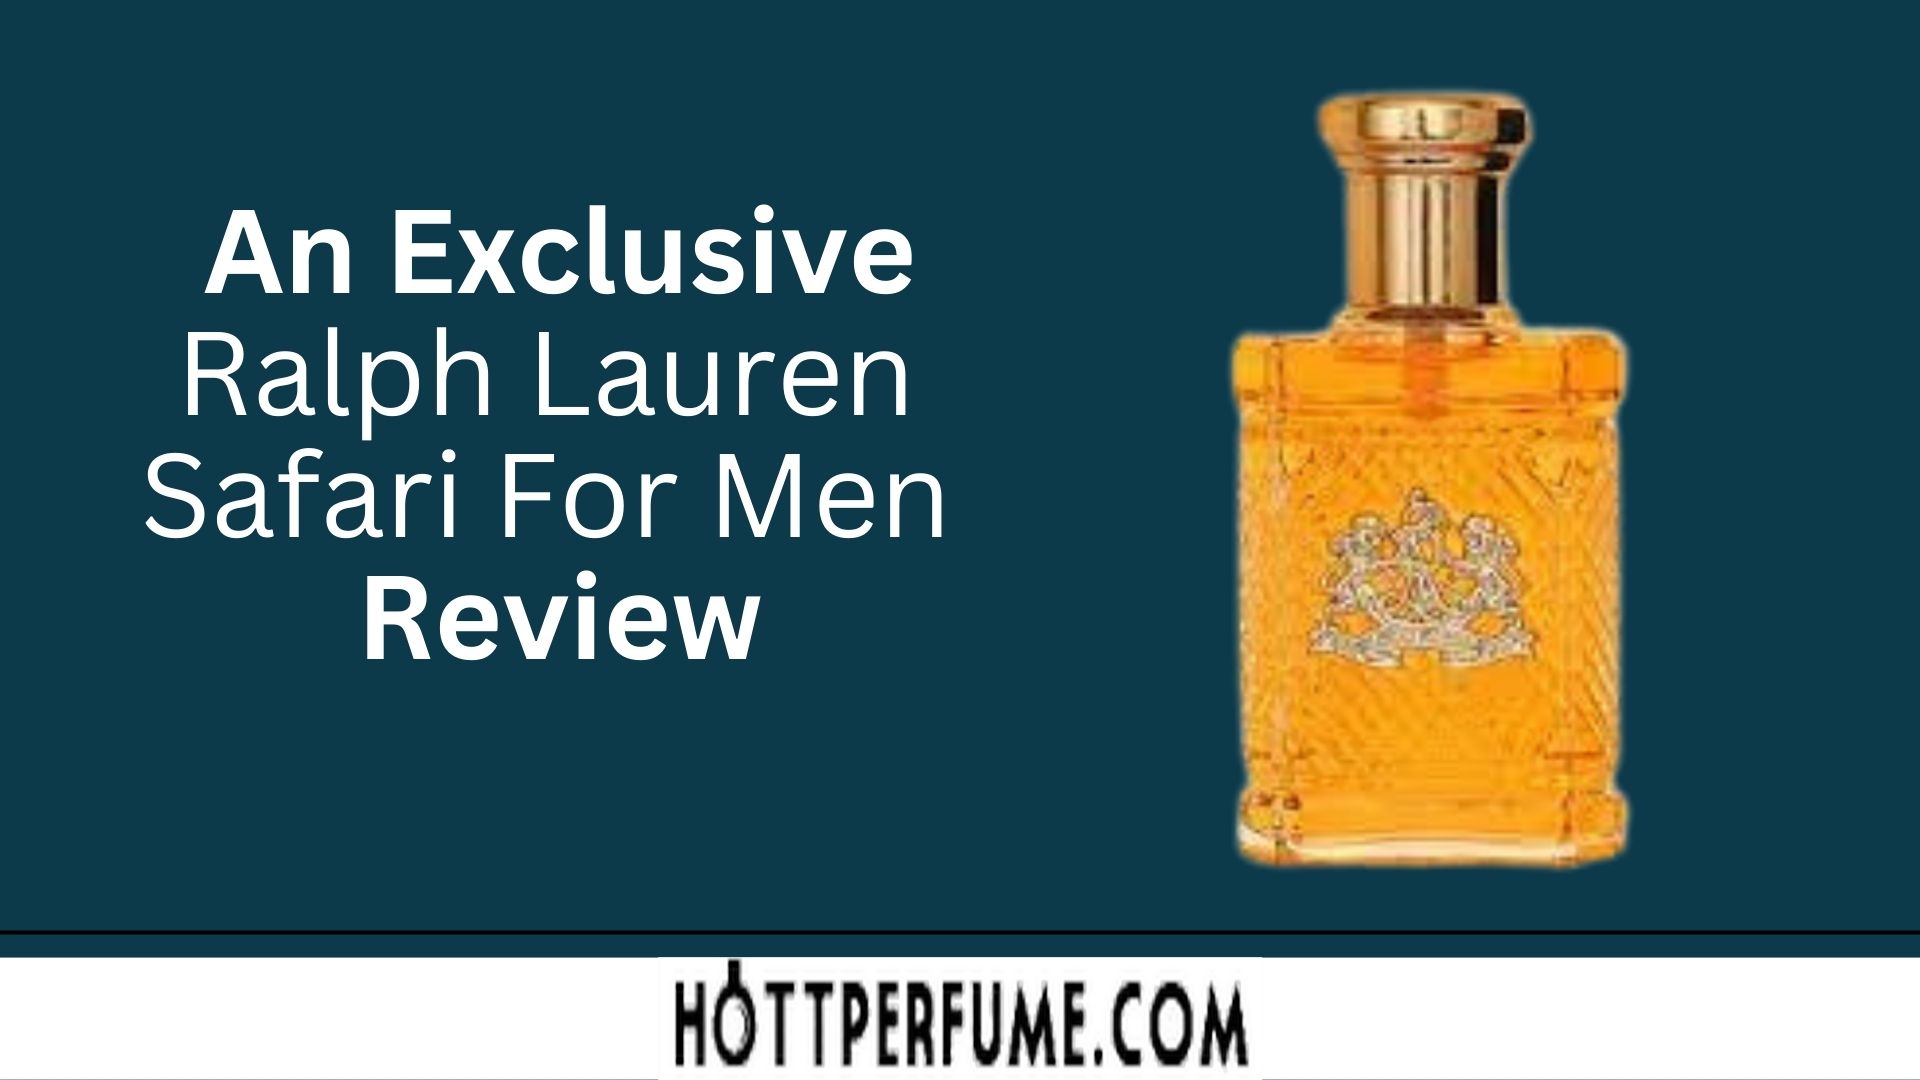 An Exclusive Ralph Lauren Safari For Men